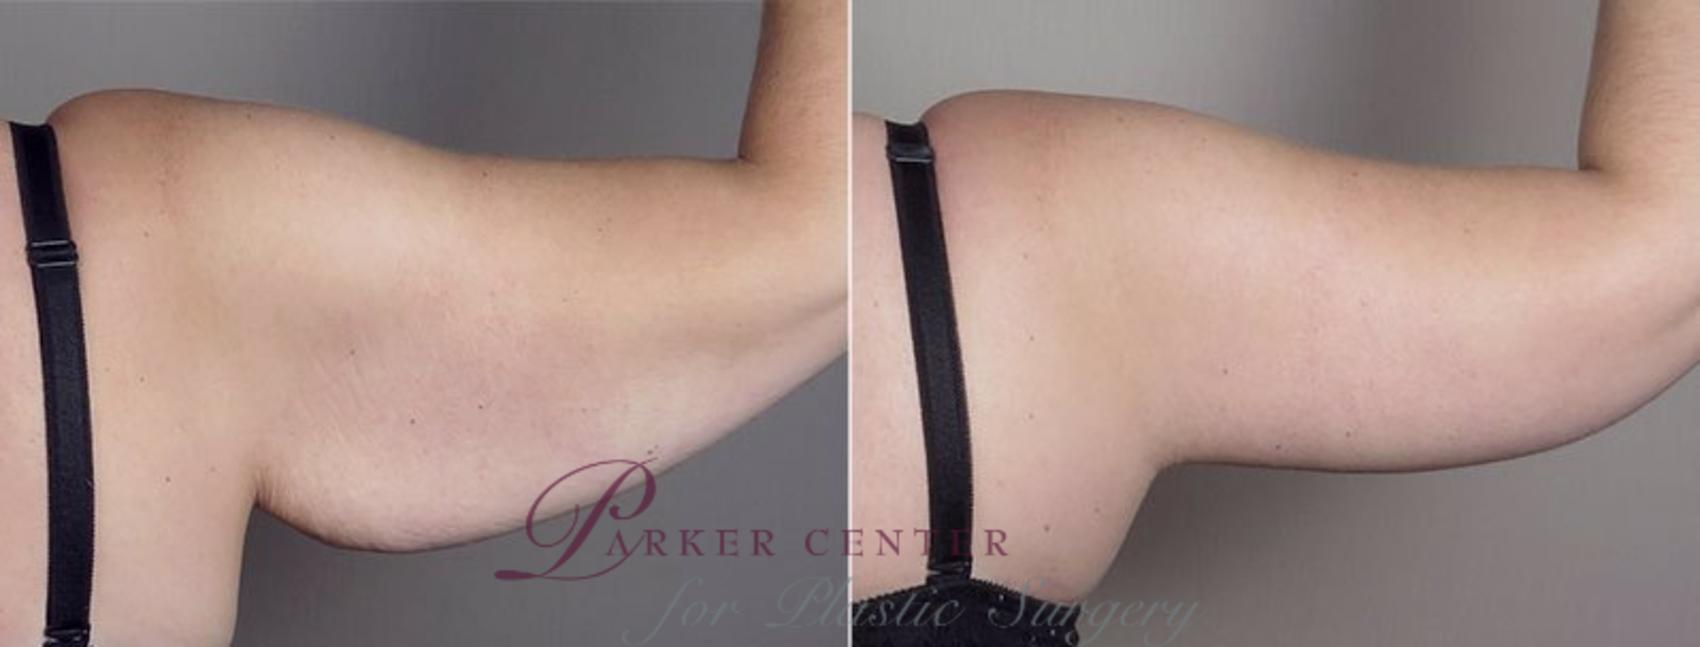 Upper Arm Rejuvenation Case 749 Before & After View #7 | Paramus, NJ | Parker Center for Plastic Surgery